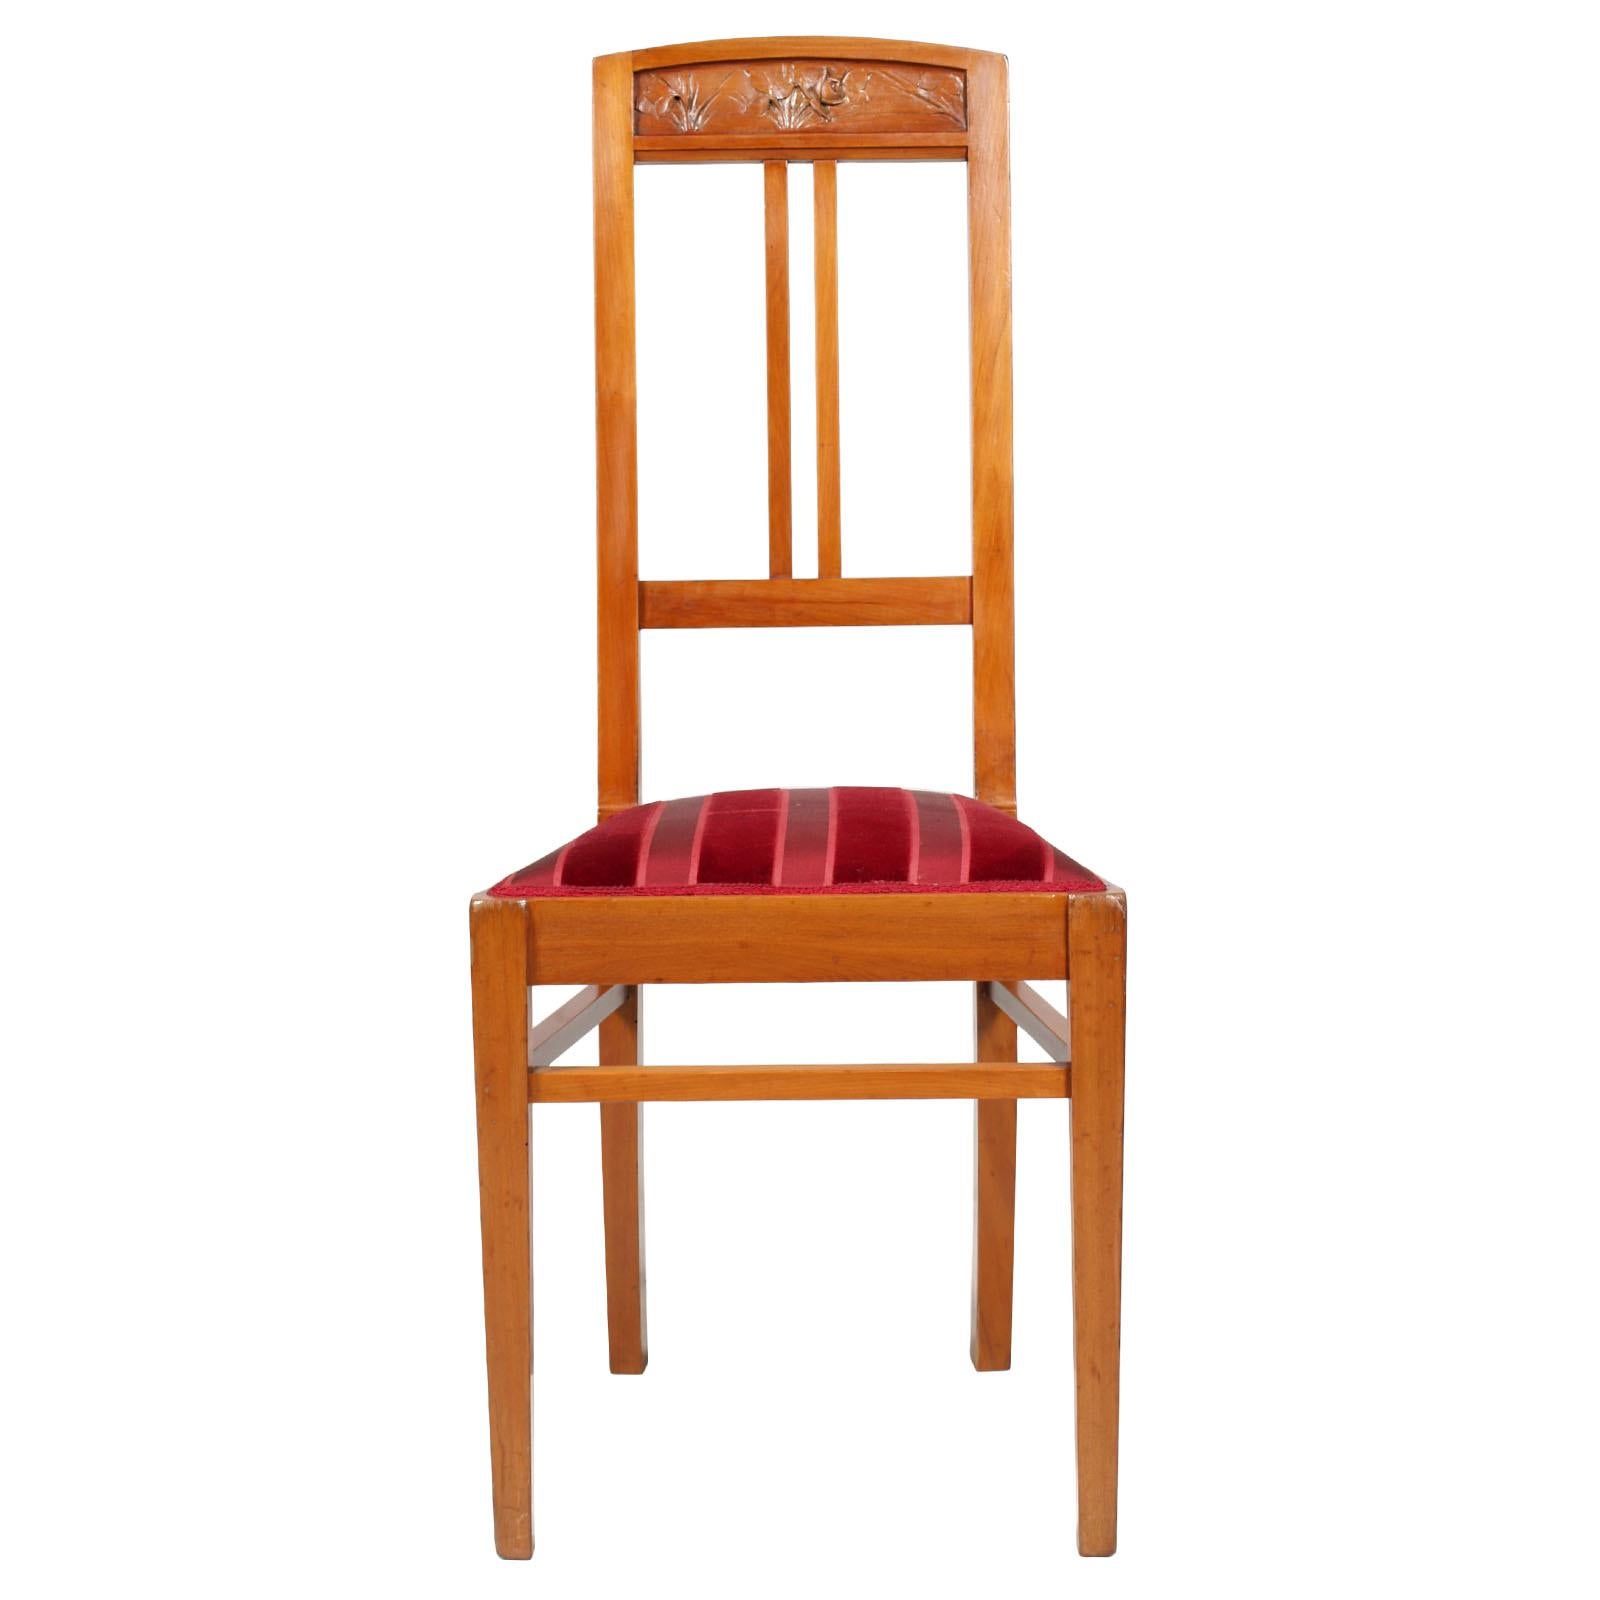 Élégantes chaises d'appoint italiennes Art Nouveau avec tabouret, en noyer blond, sculptées à la main, restaurées et polies à la cire. Précieux tissu à rayures bicolores en velours rouge foncé.

Mesures en cm : chaises H 47/105, L 42, P 45 -